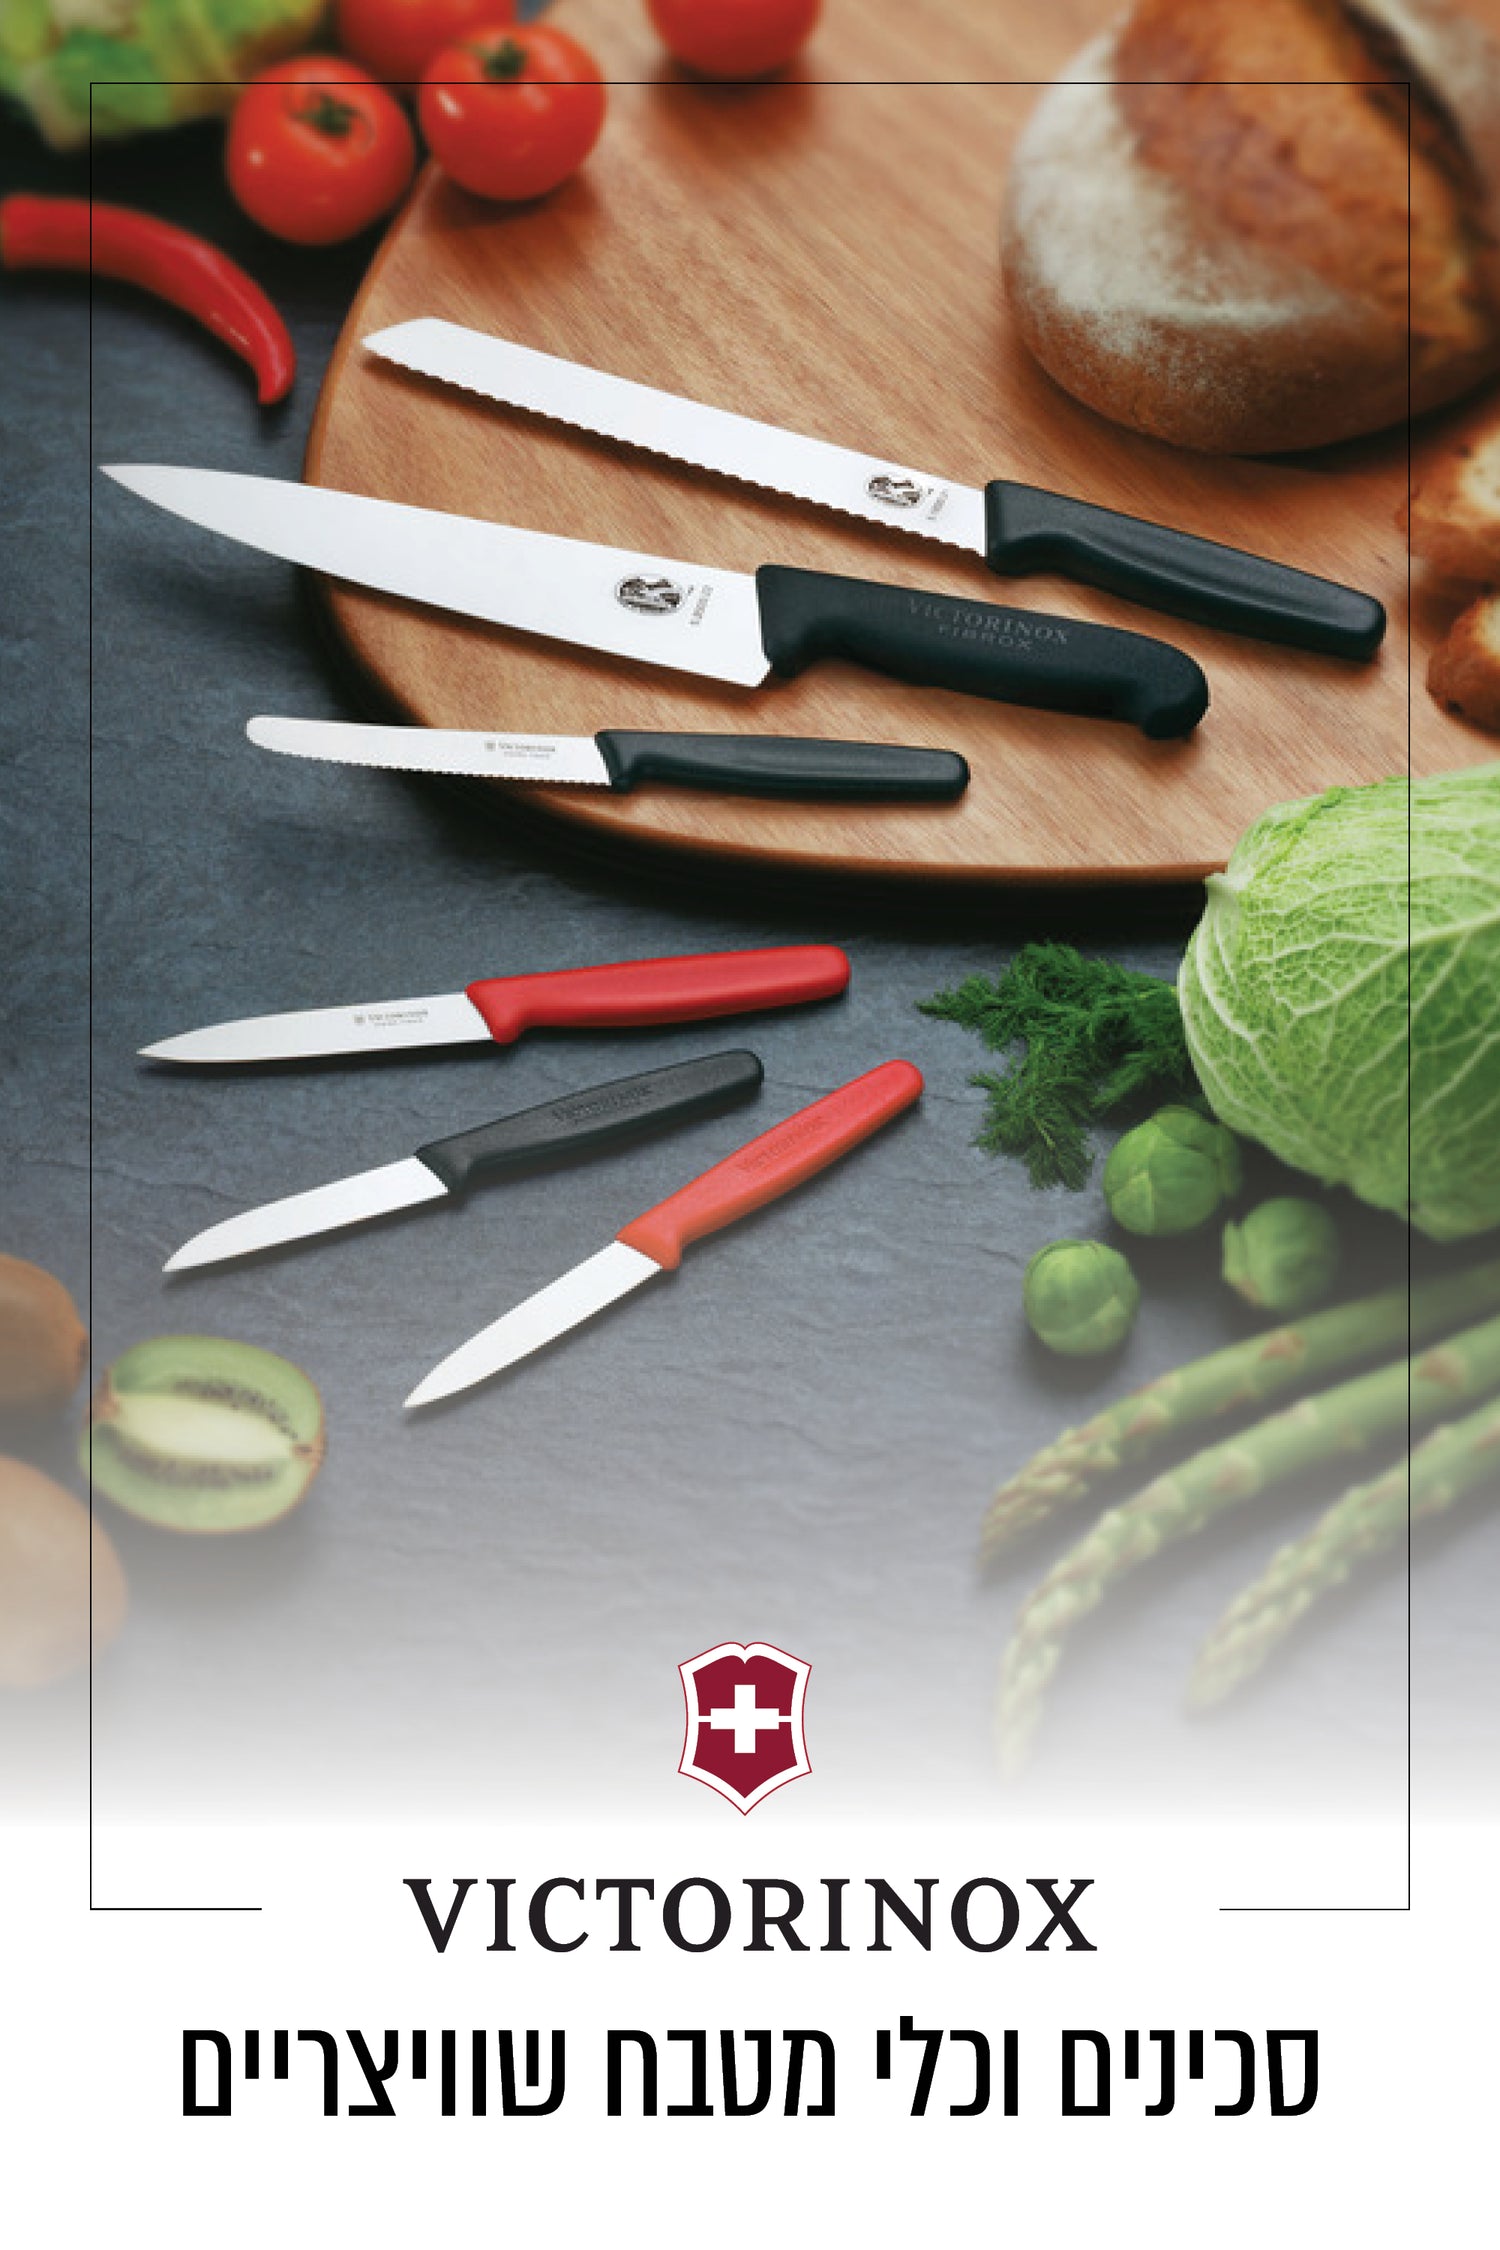 Victorinox סכינים וכלי מטבח שוויצריים